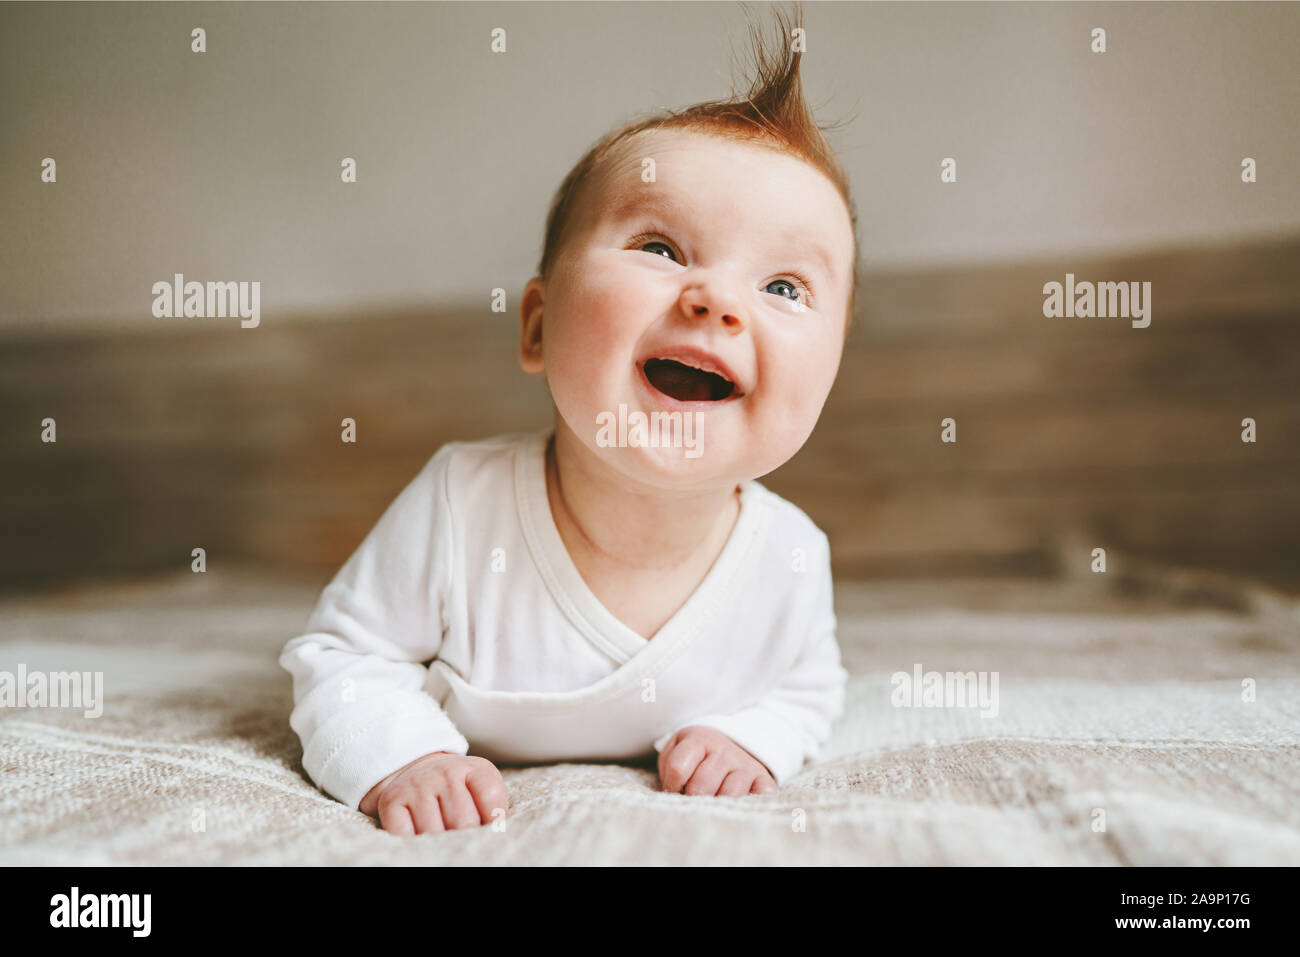 Happy baby strisciando in camera da letto lo stile di vita della famiglia sorridente ridere bambino 3 mese vecchio kid emozioni positive Foto Stock